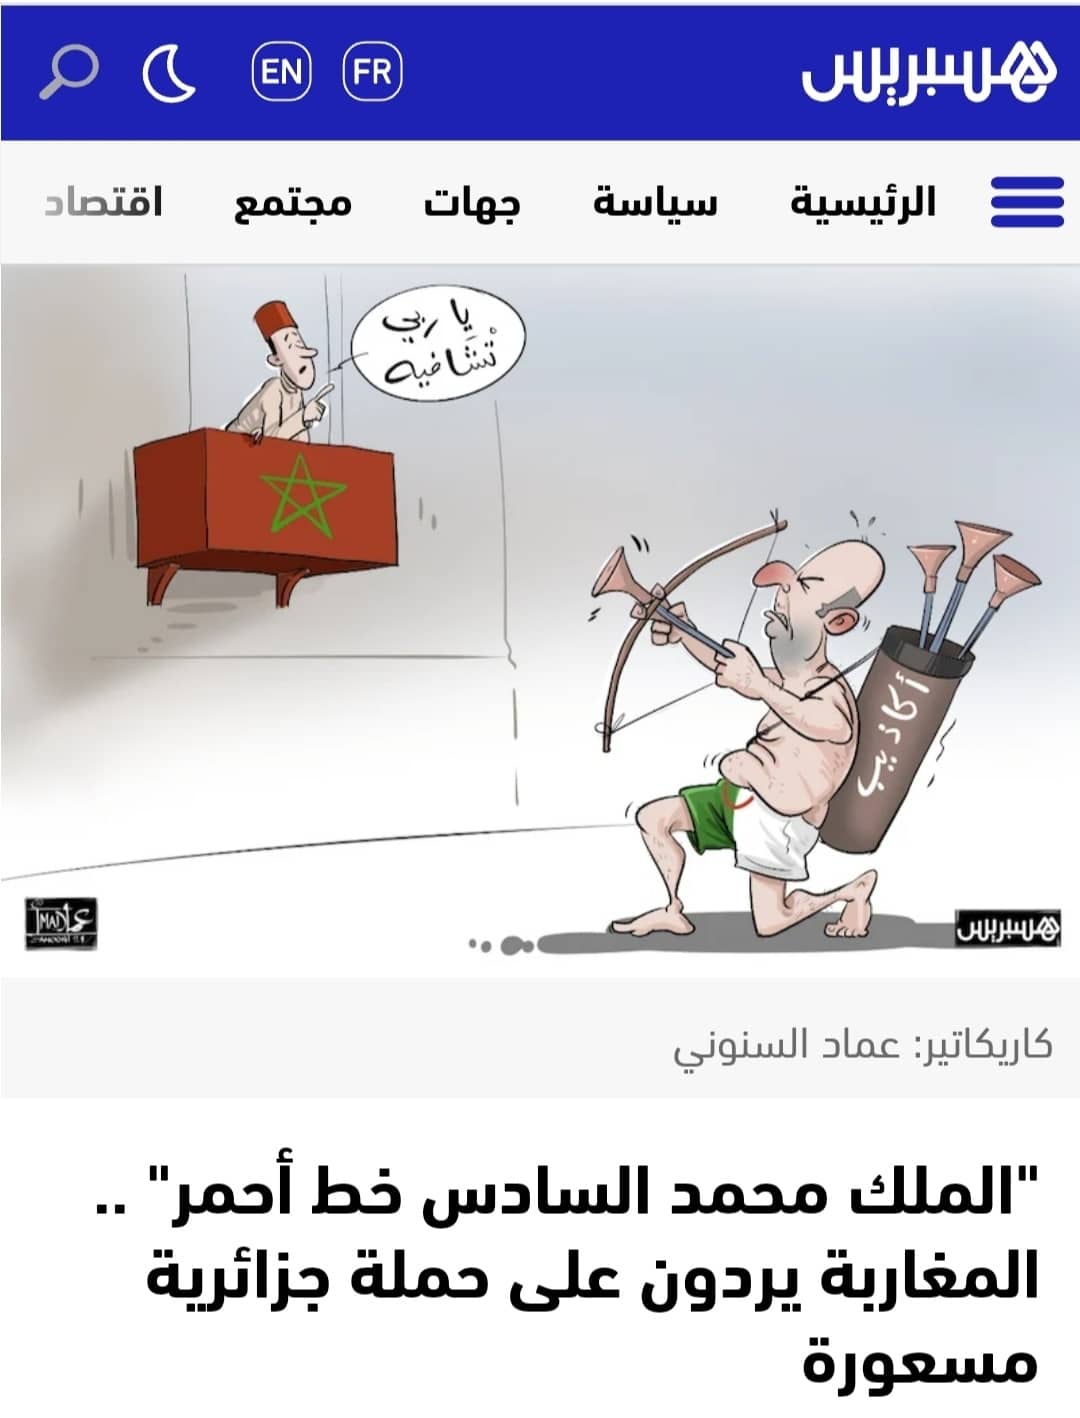 موقع هسبريس المغربي يدشن حملة للدفاع عن ملك المغرب ضد ما أسماه "إساءة الكابرانات"